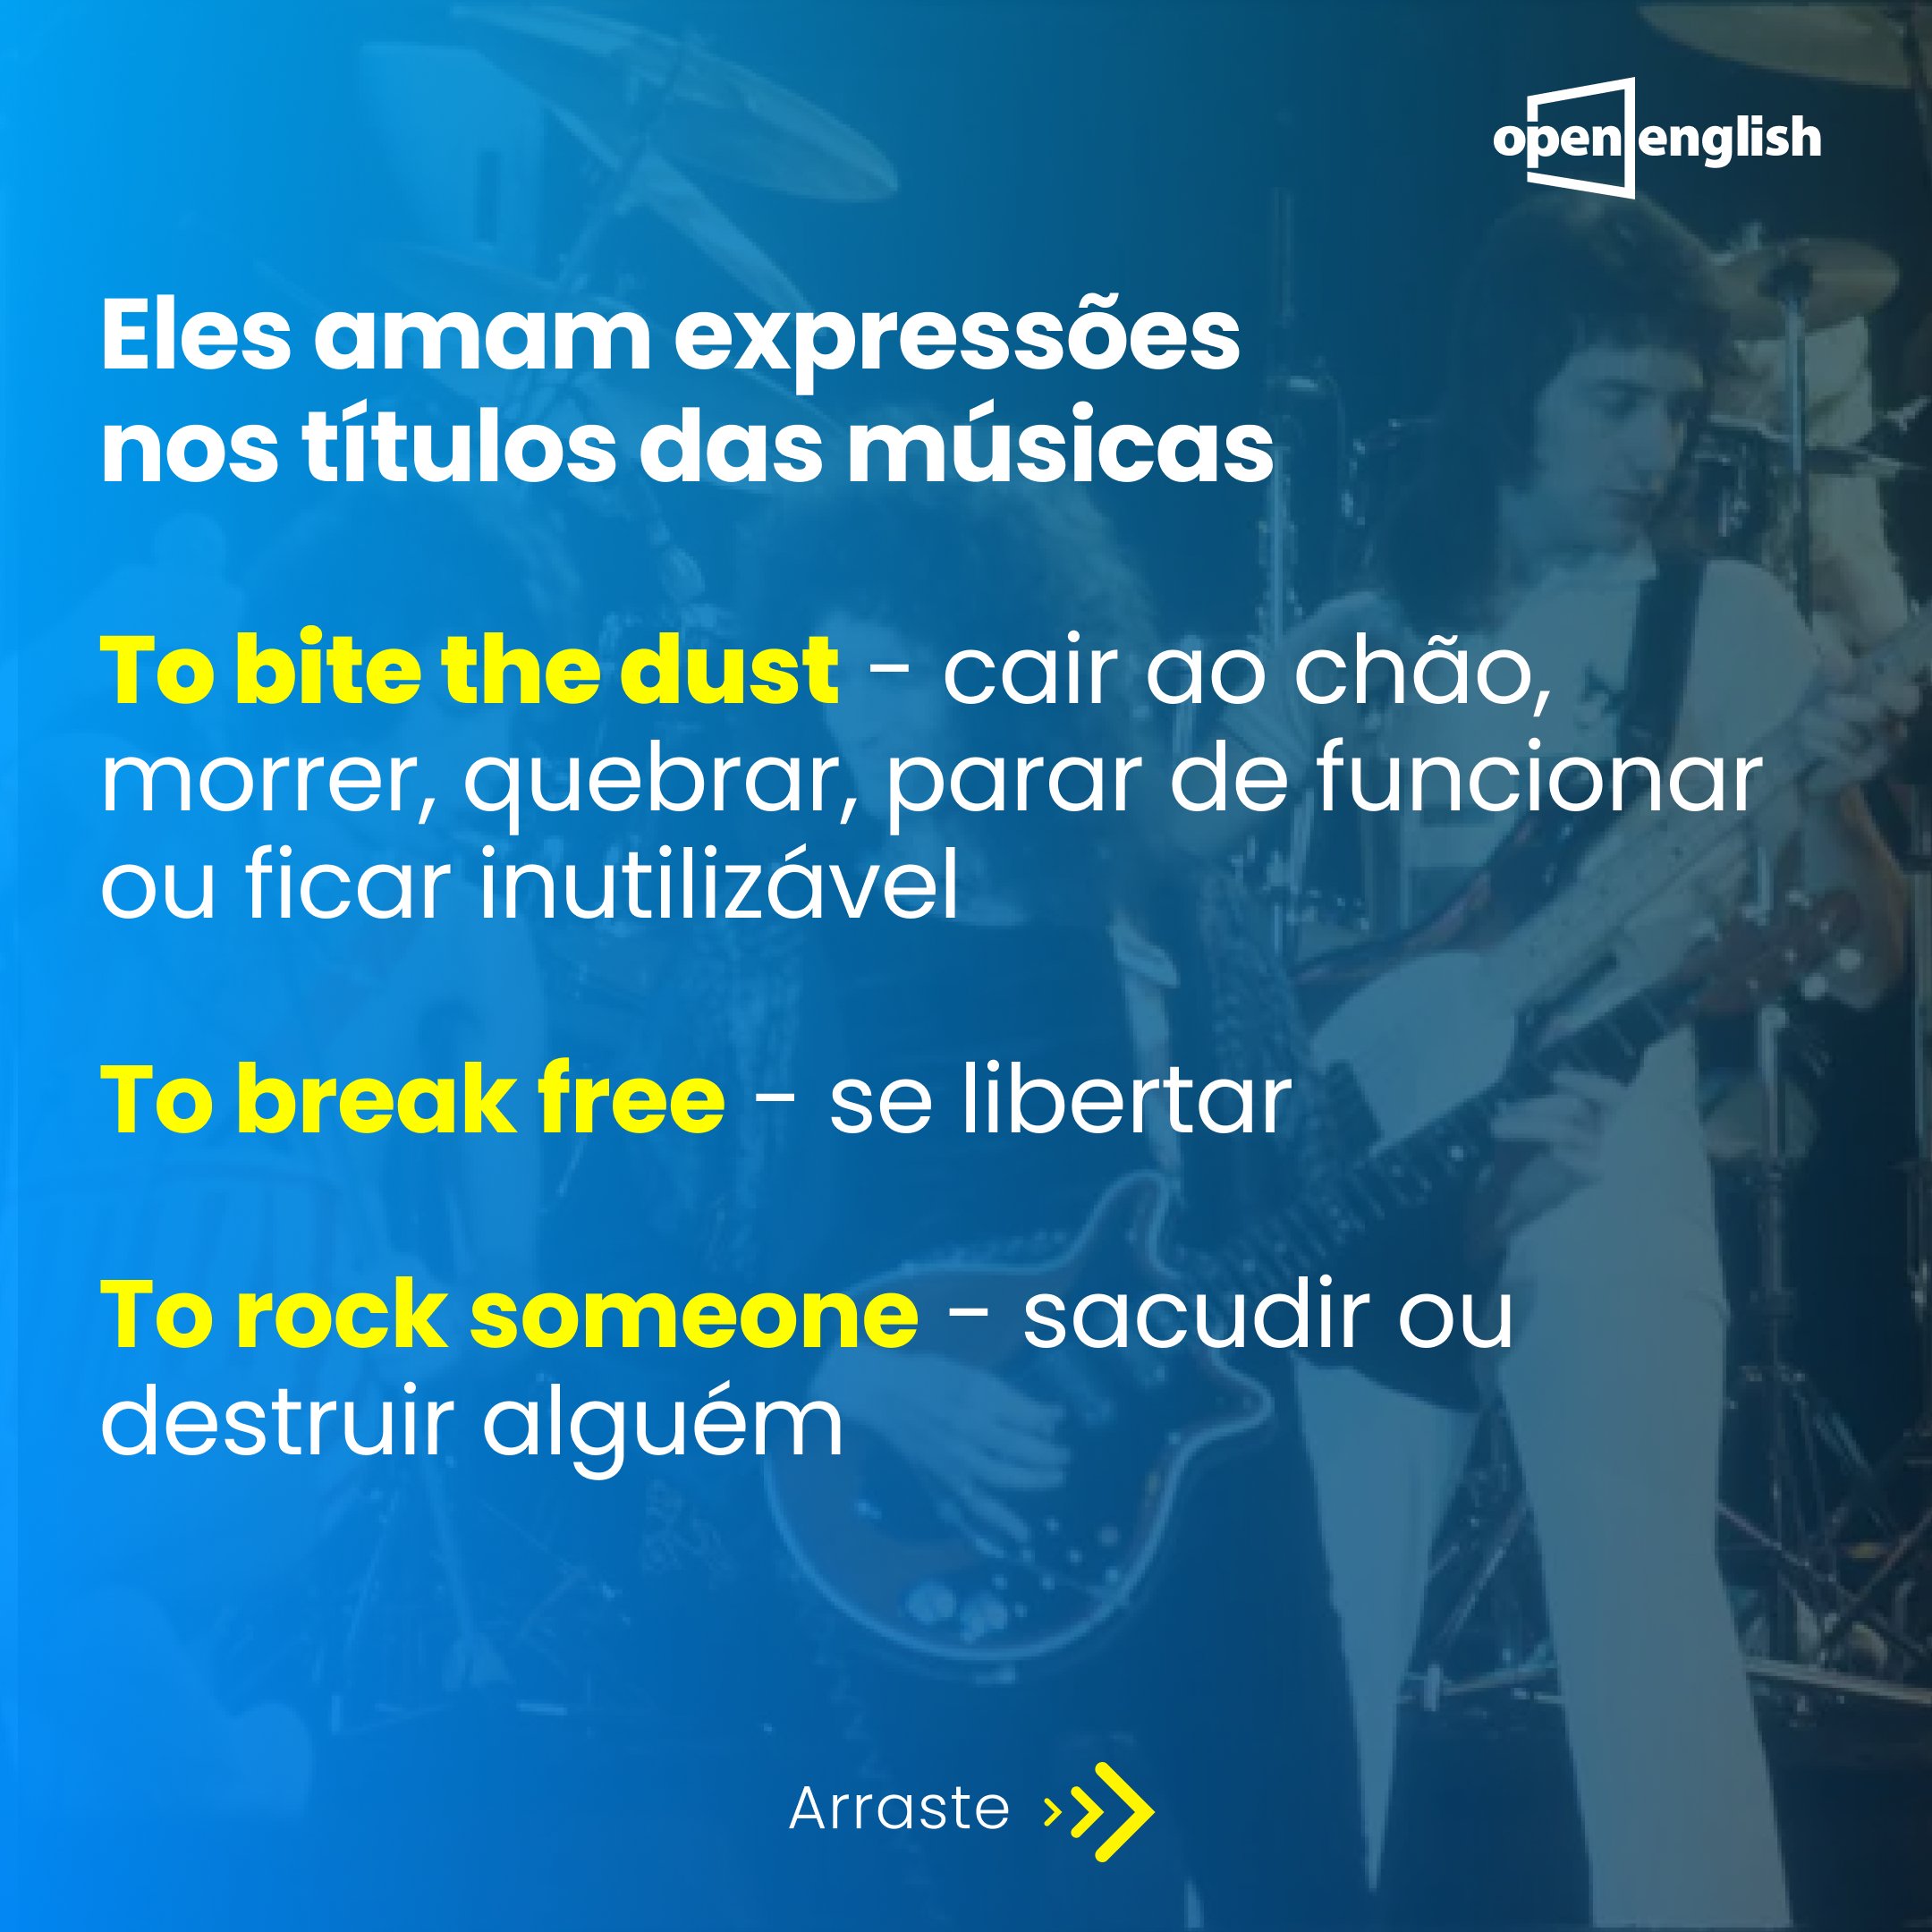 Open English Brasil Site Oficial  Seja fluente em inglês mais fácil e  rápido